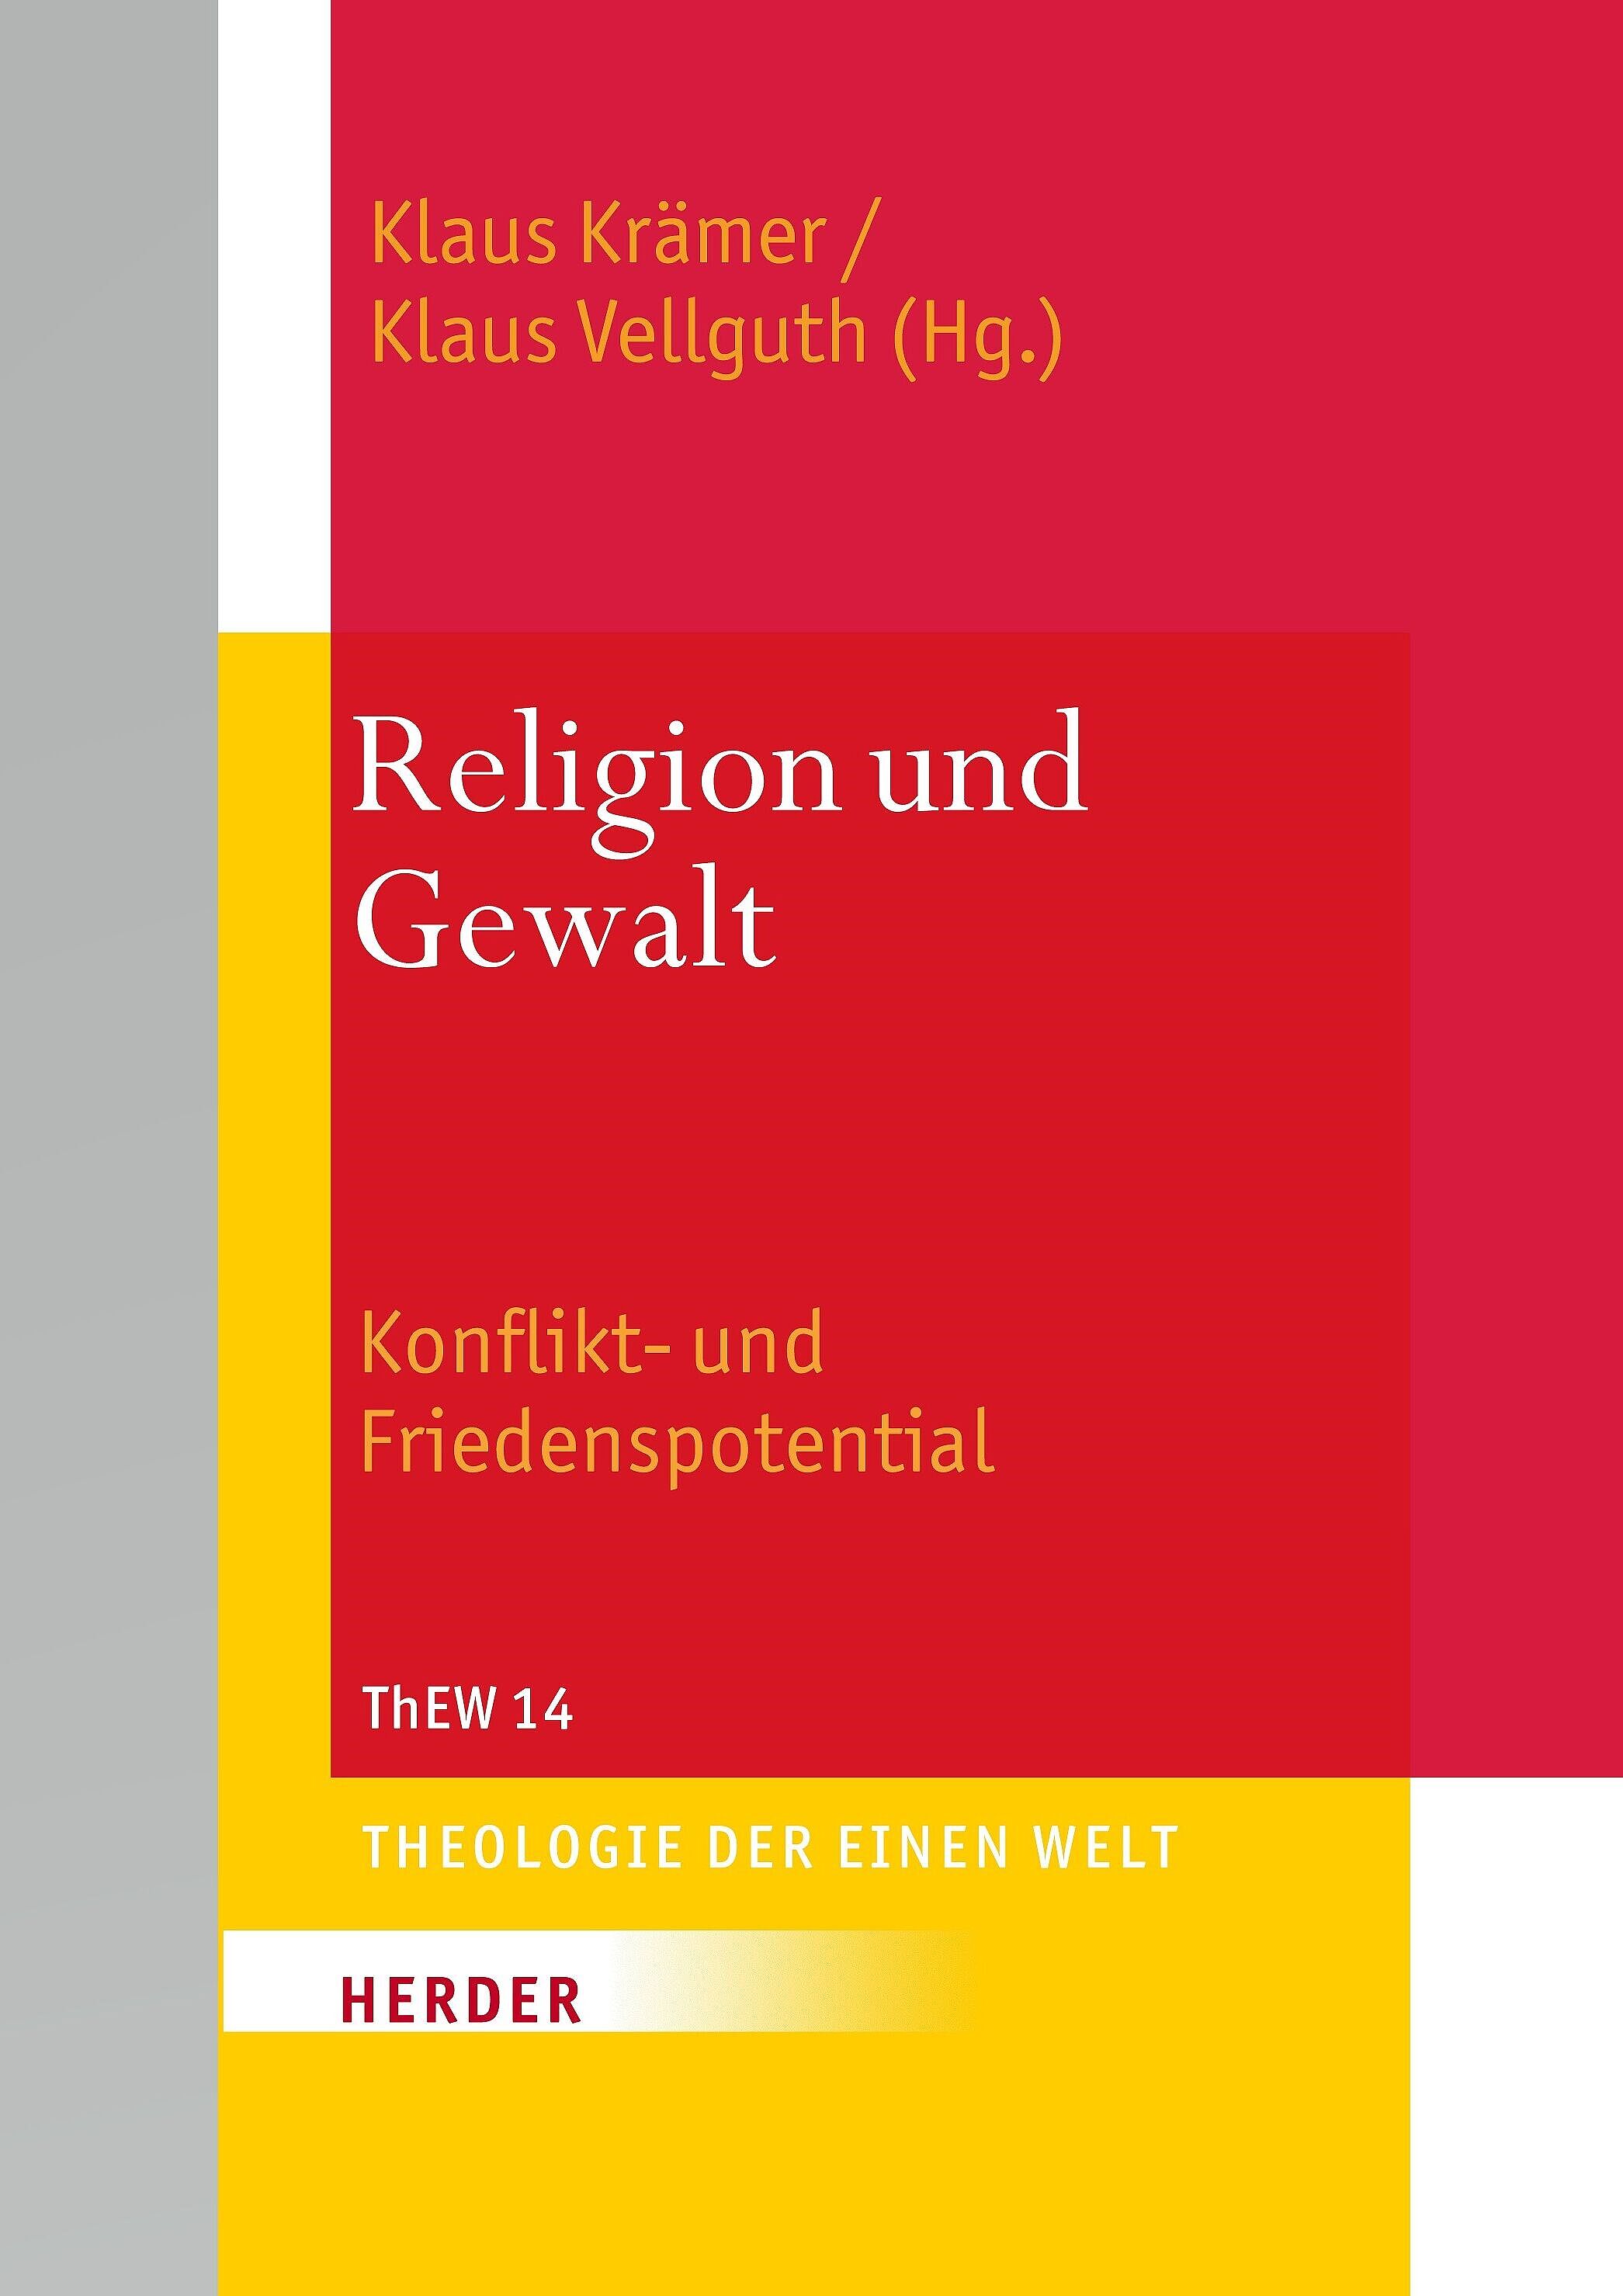 Theologie der Einen Welt (ThEW 14): Religion und Gewalt